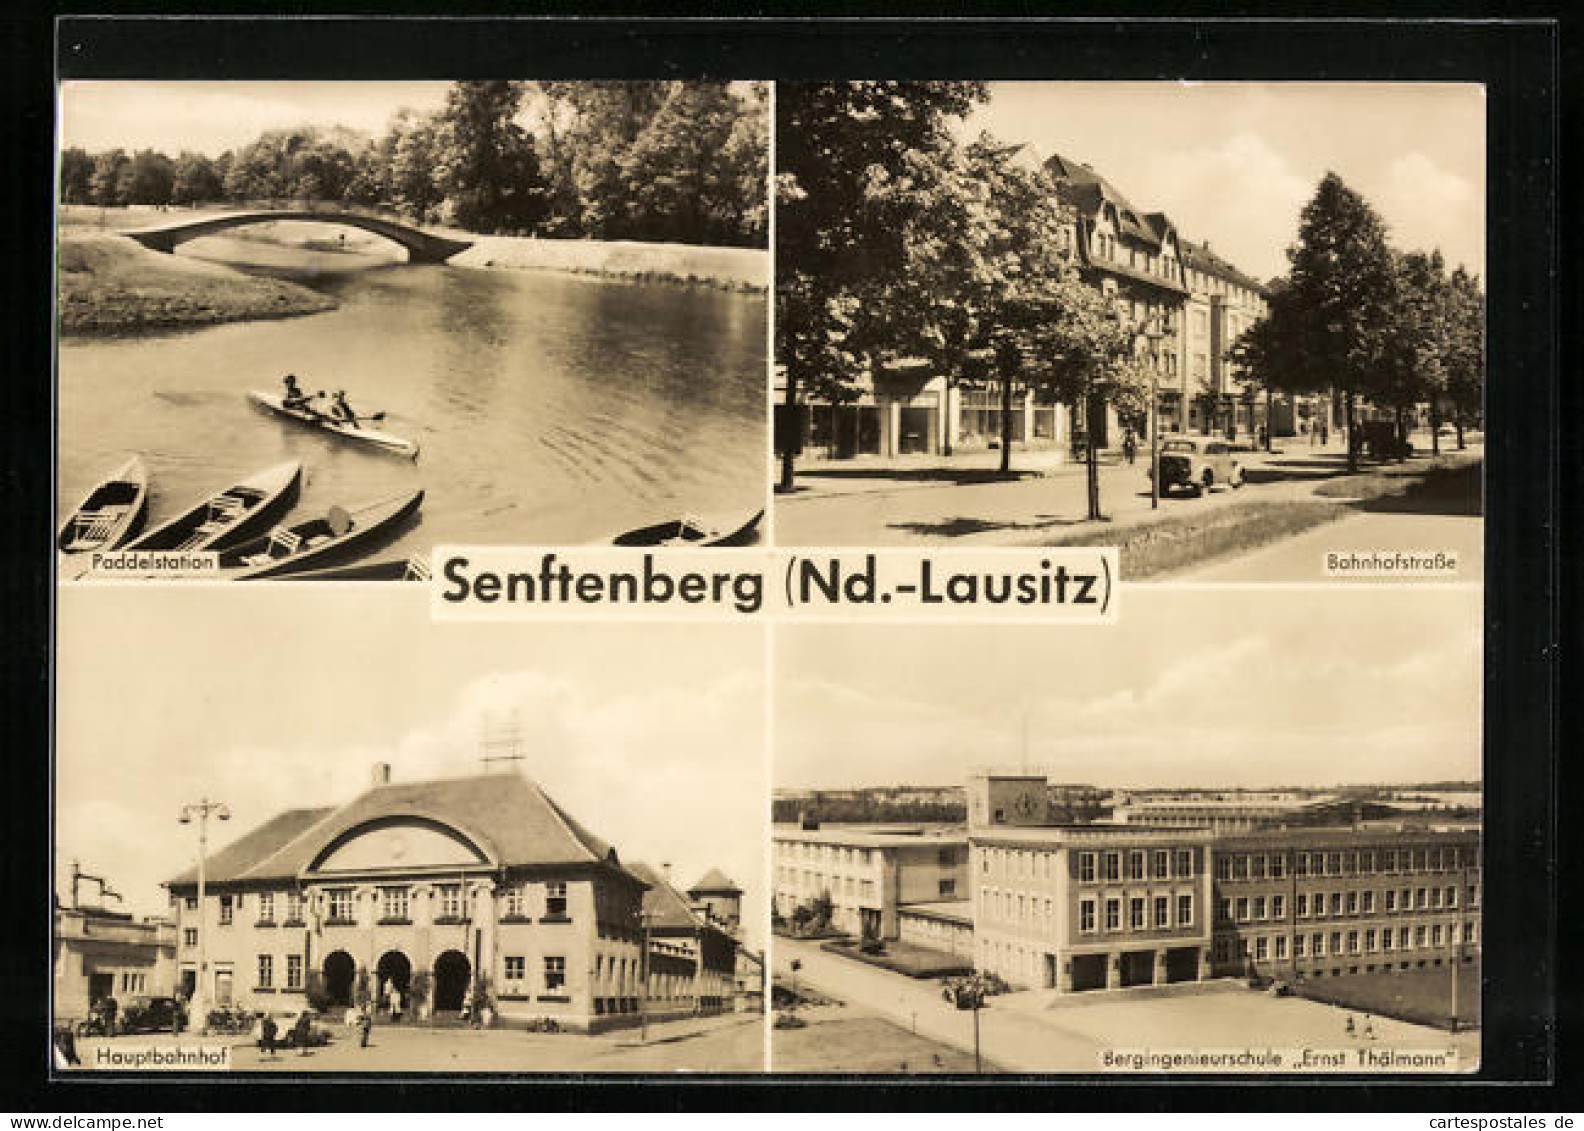 AK Senftenberg I. Nd.-Lausitz, Paddelstation, Bahnhofstrasse, Hauptbahnhof  - Senftenberg